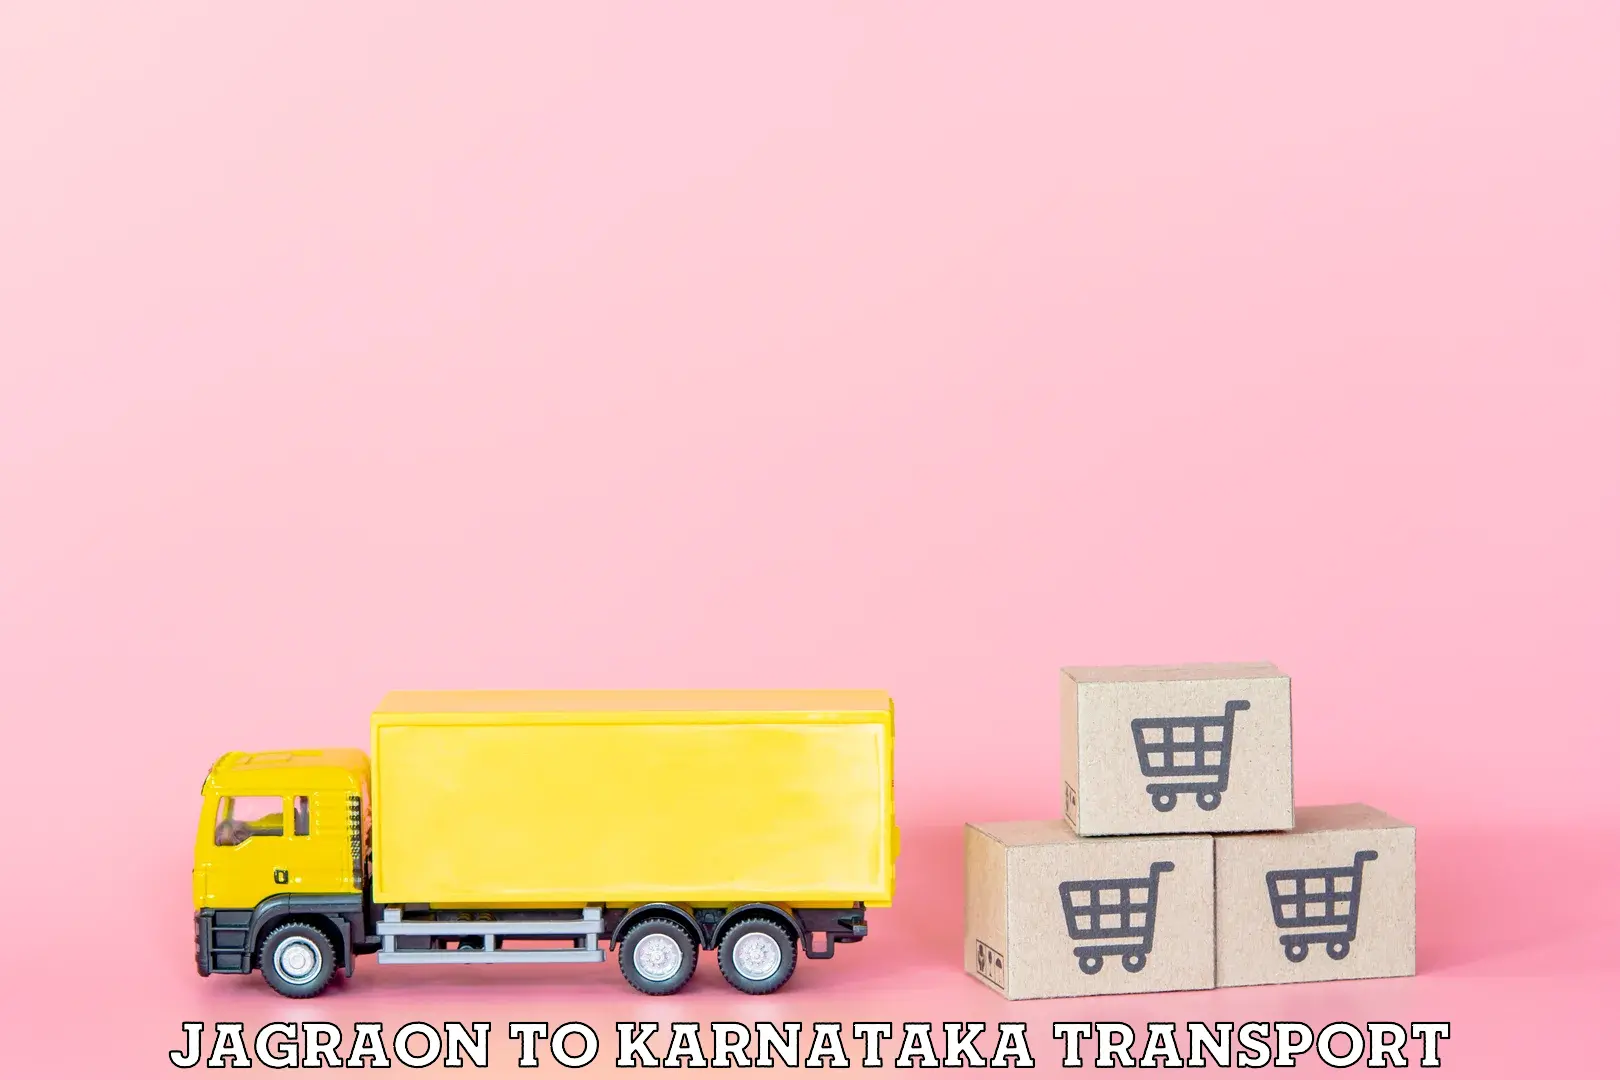 India truck logistics services Jagraon to IIIT Raichur